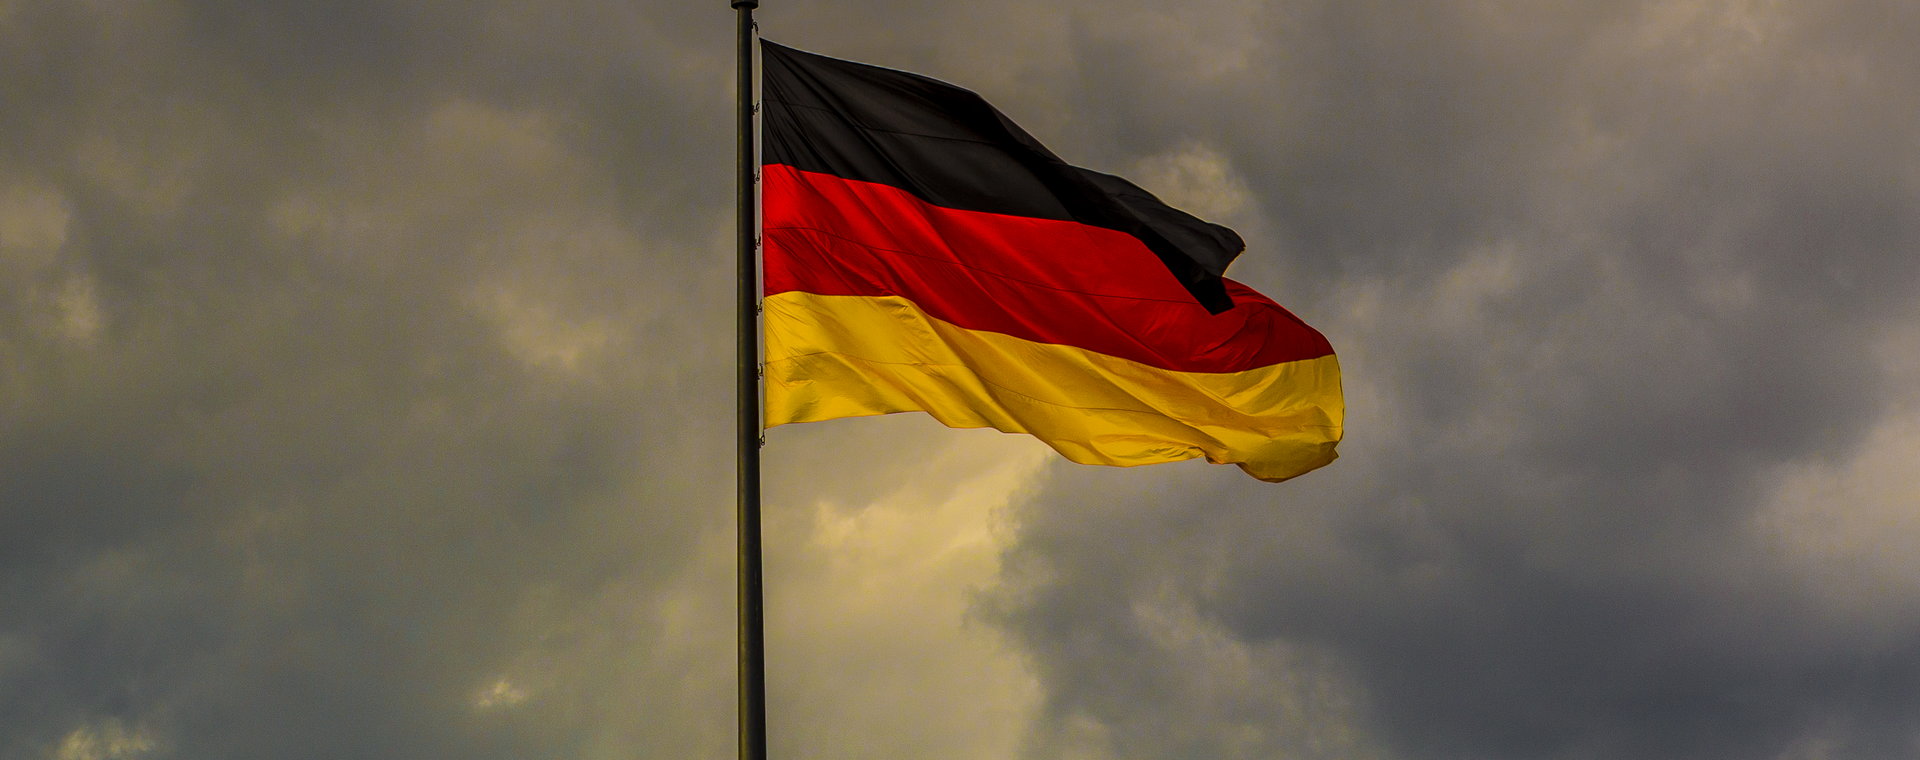 Ciemne chmury zbierają się nad niemiecką gospodarką